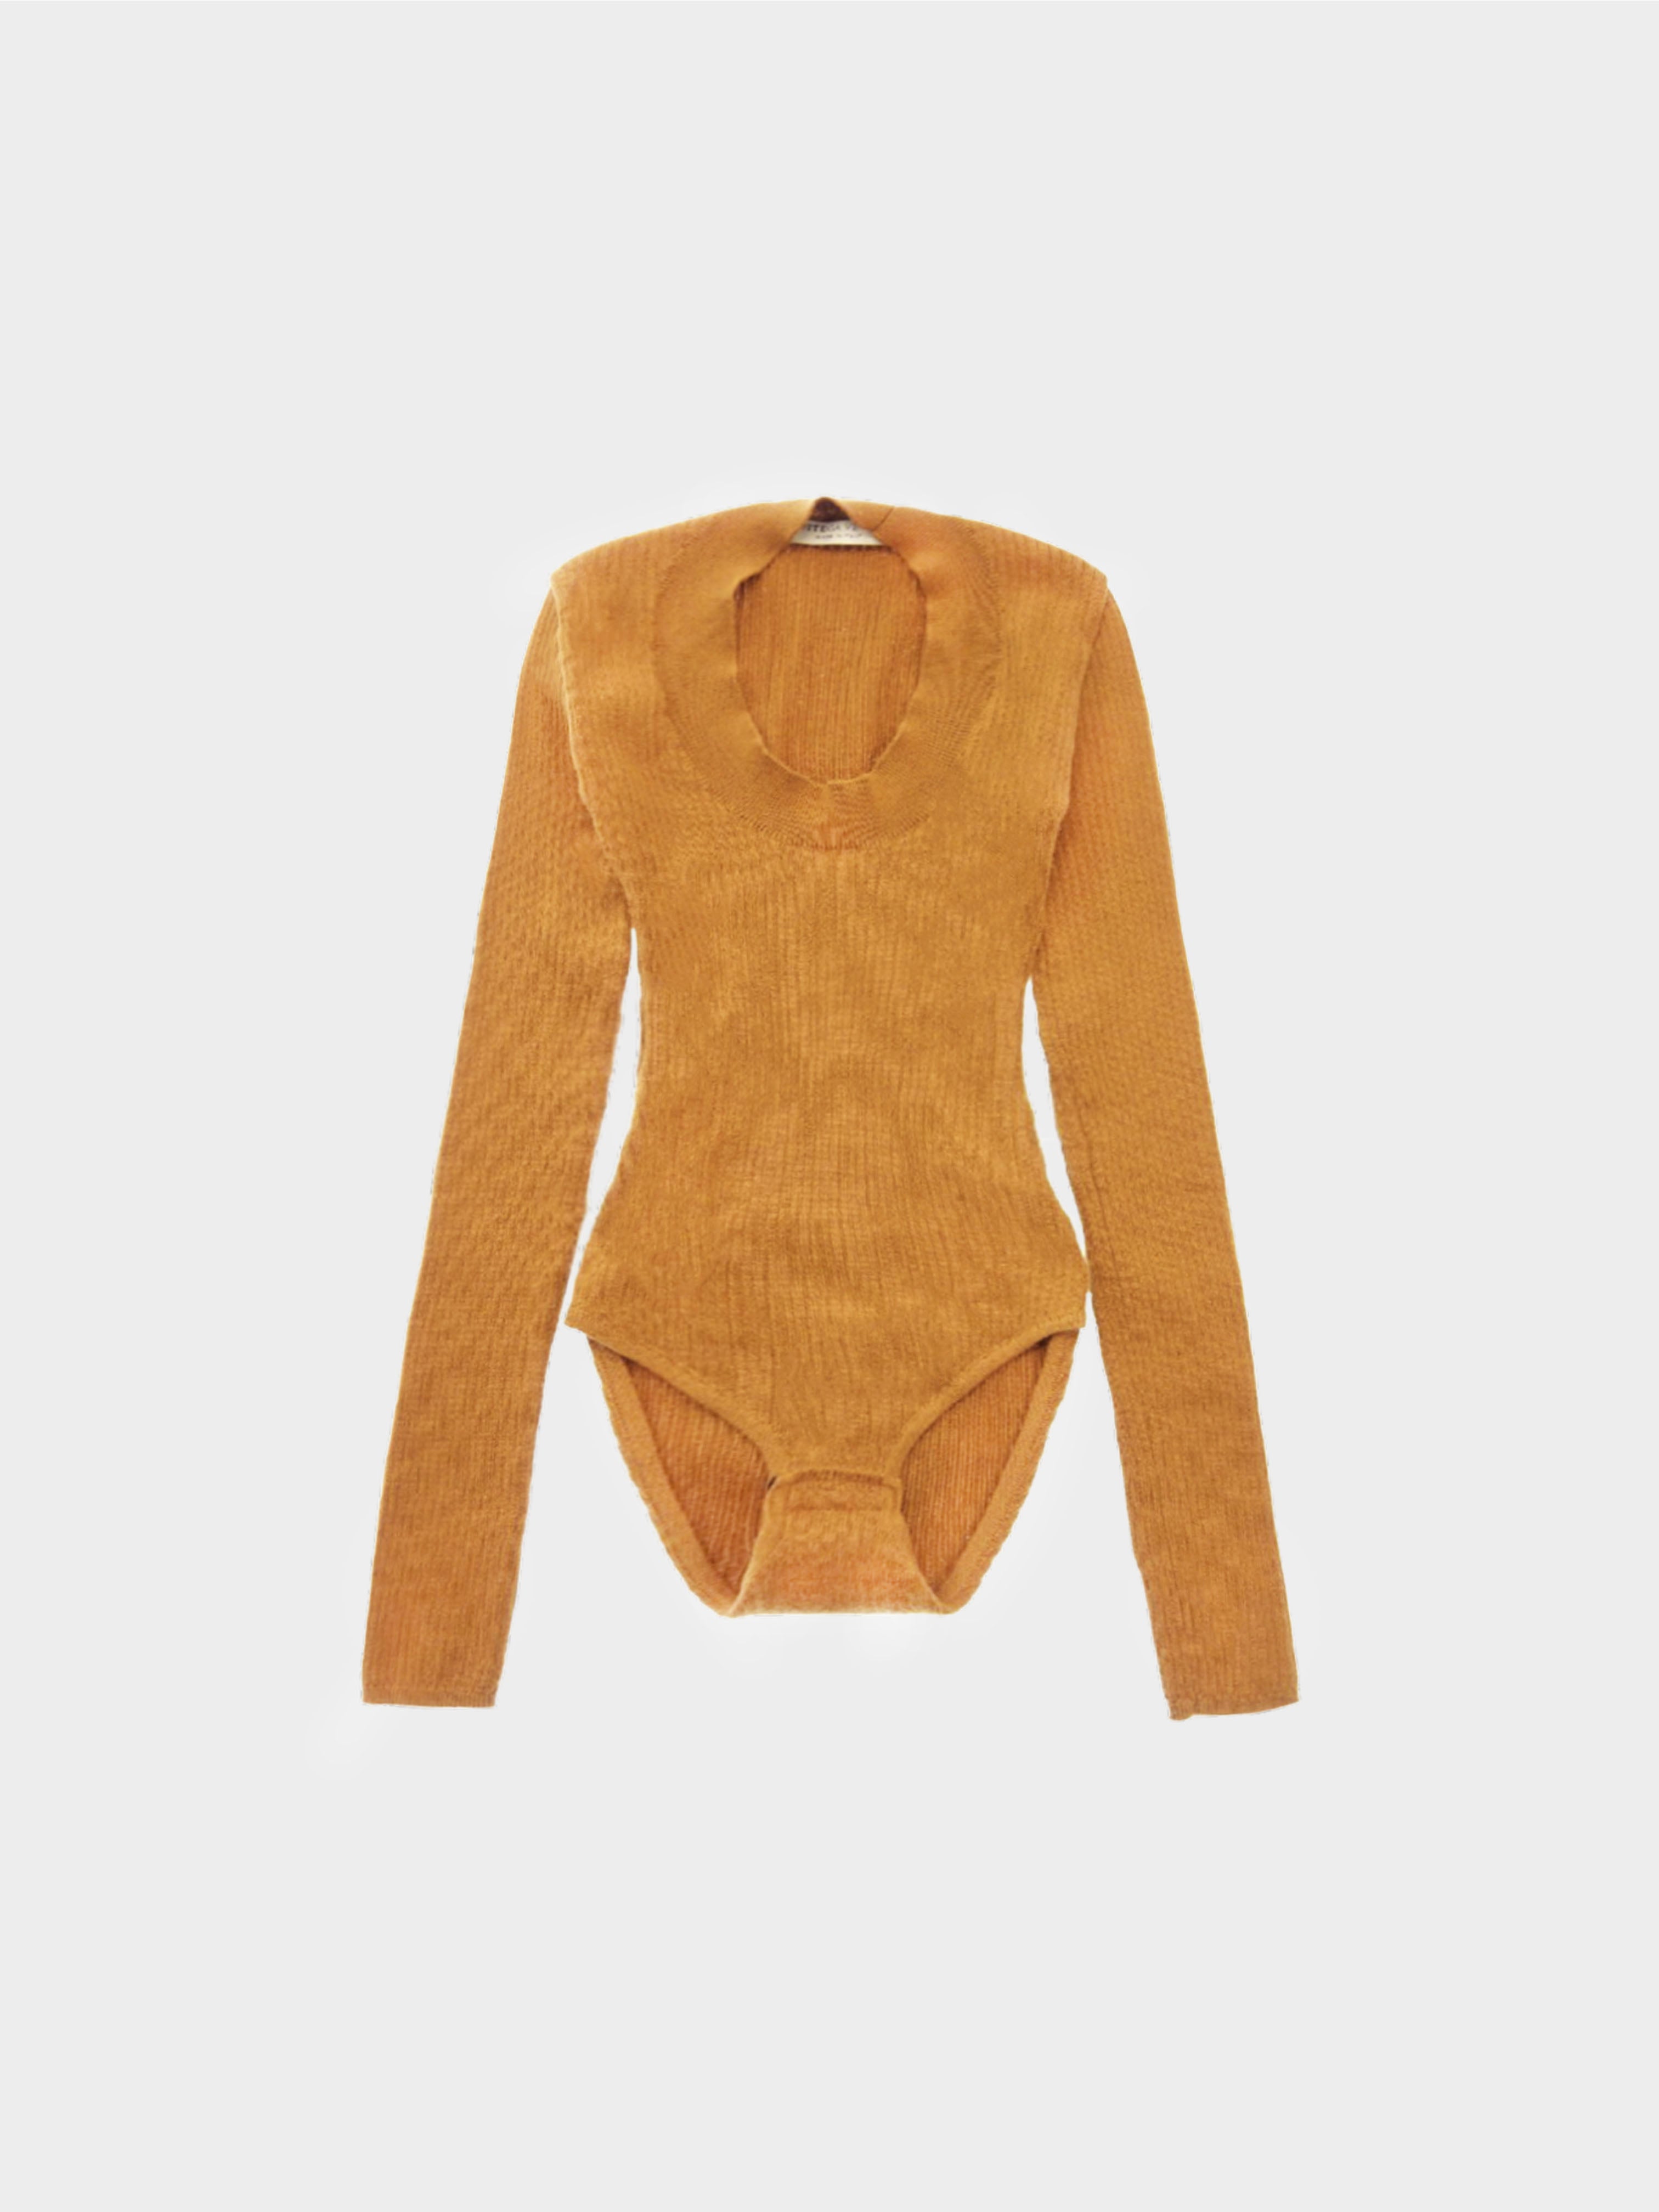 Bottega Veneta 2020s Brown Long Sleeve Knitted Bodysuit